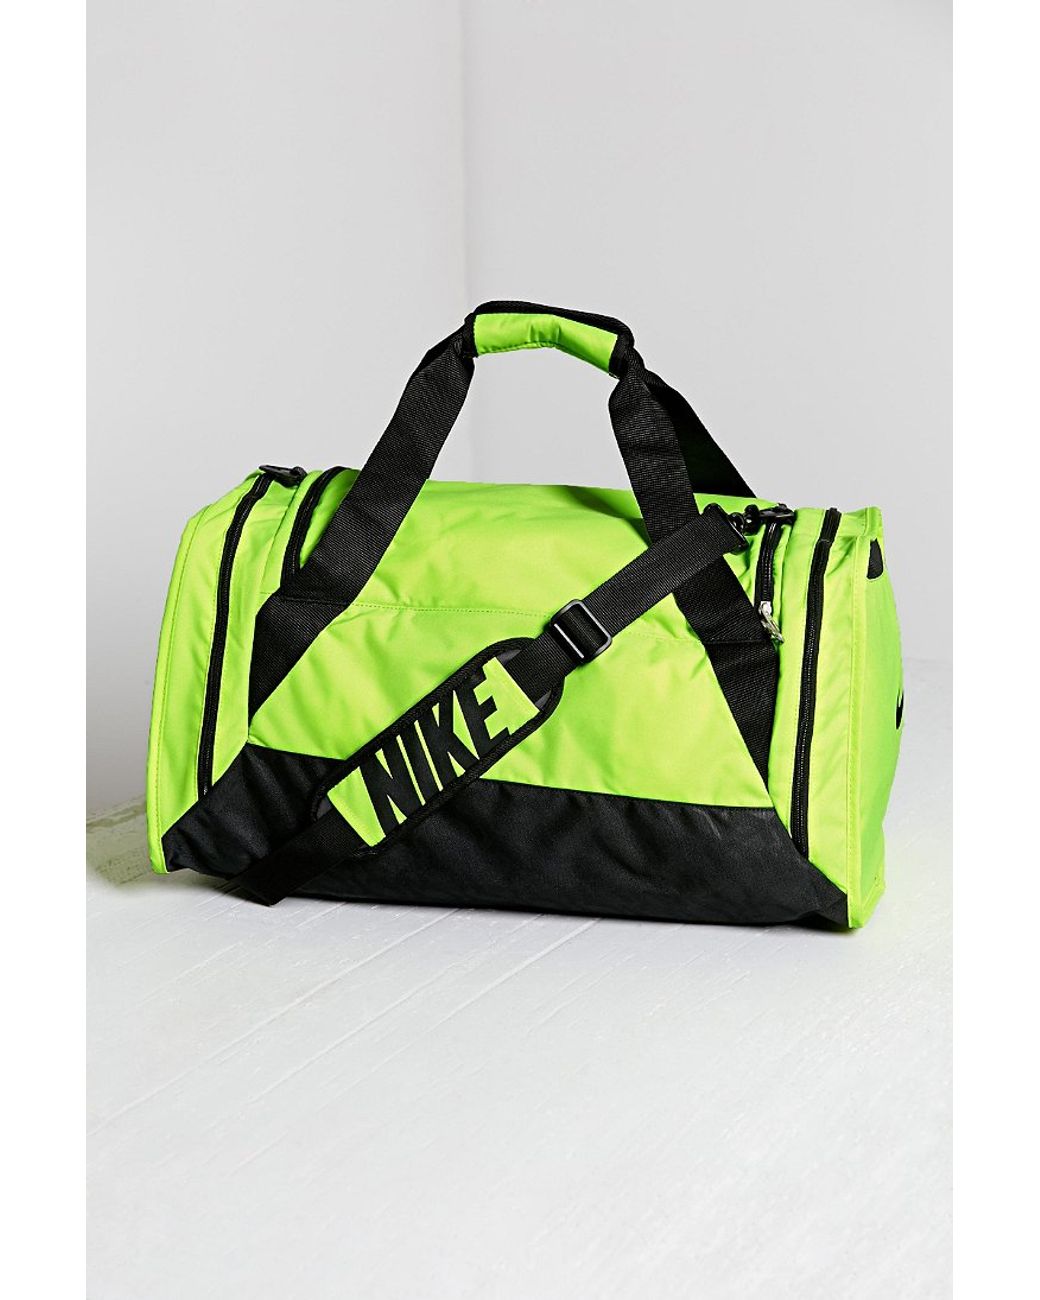 Nike Duffel Bag in Yellow | Lyst